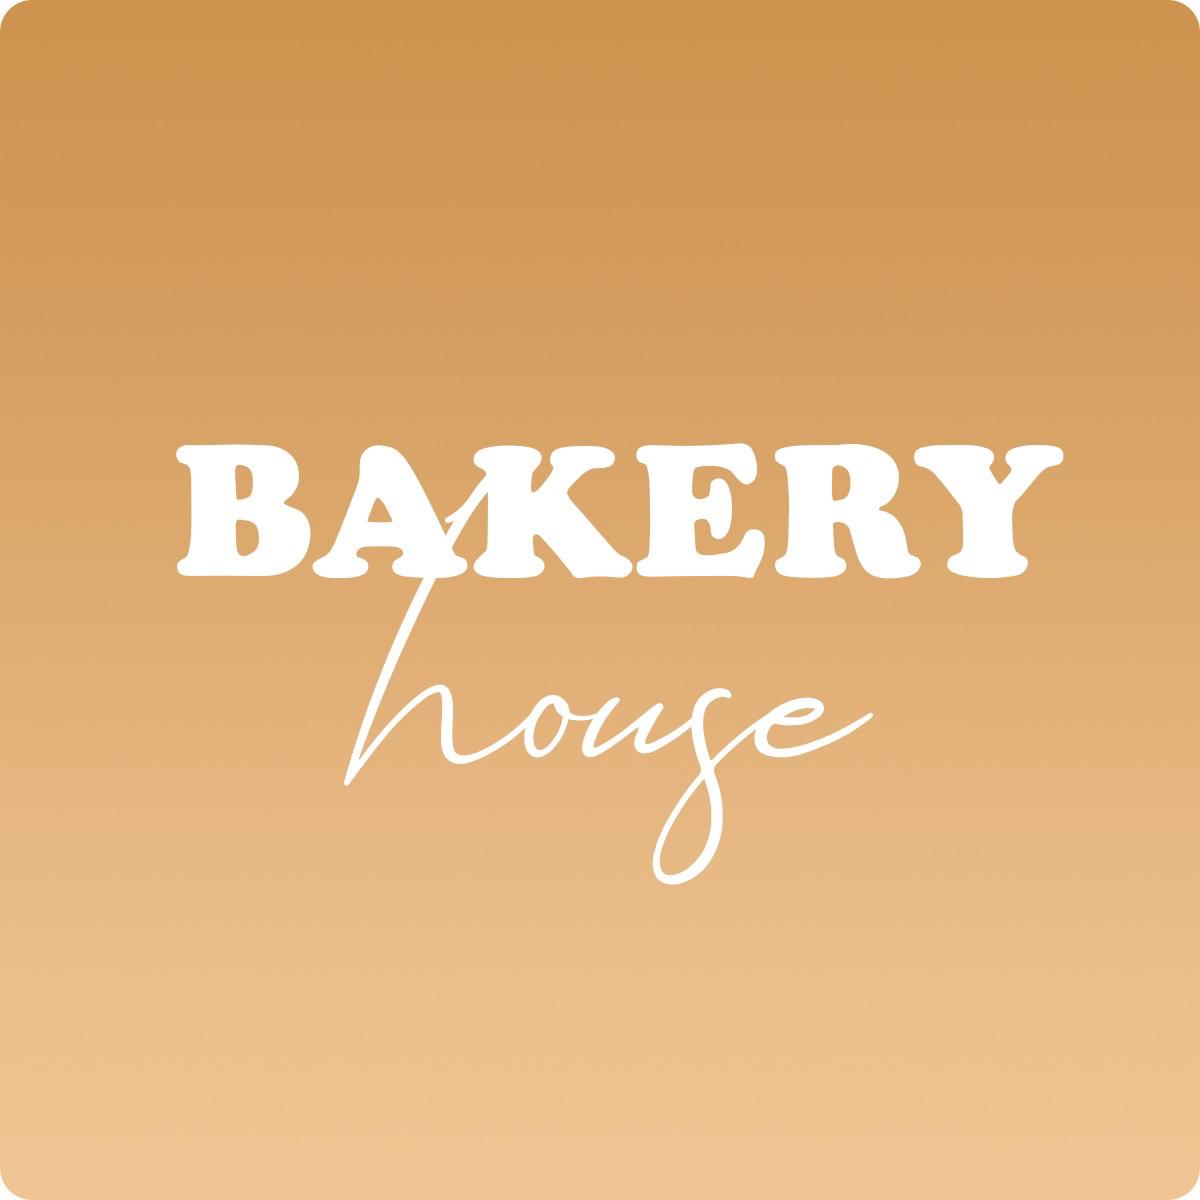 Bakeryhouse_mb